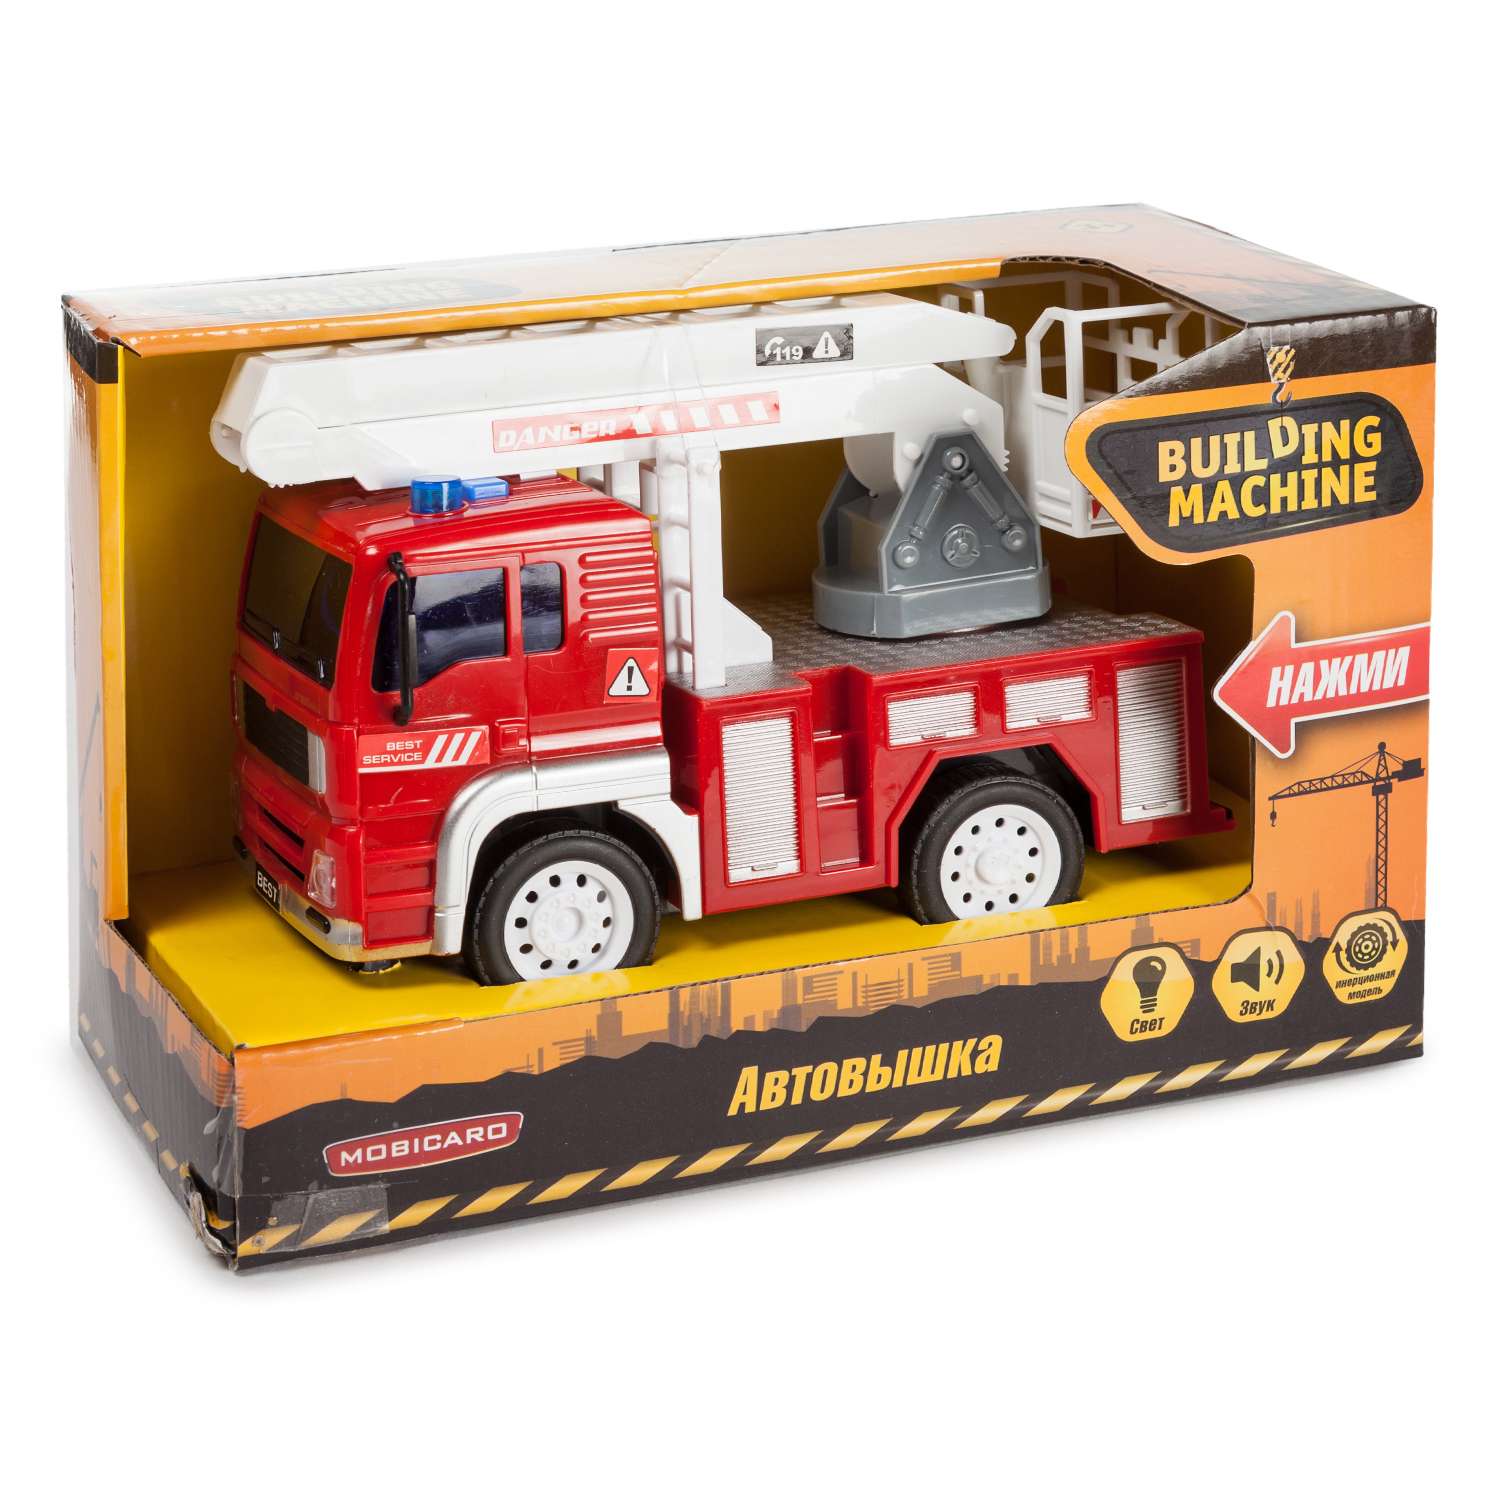 Машинка Mobicaro Пожарная инерционная OTB0560160 - фото 3